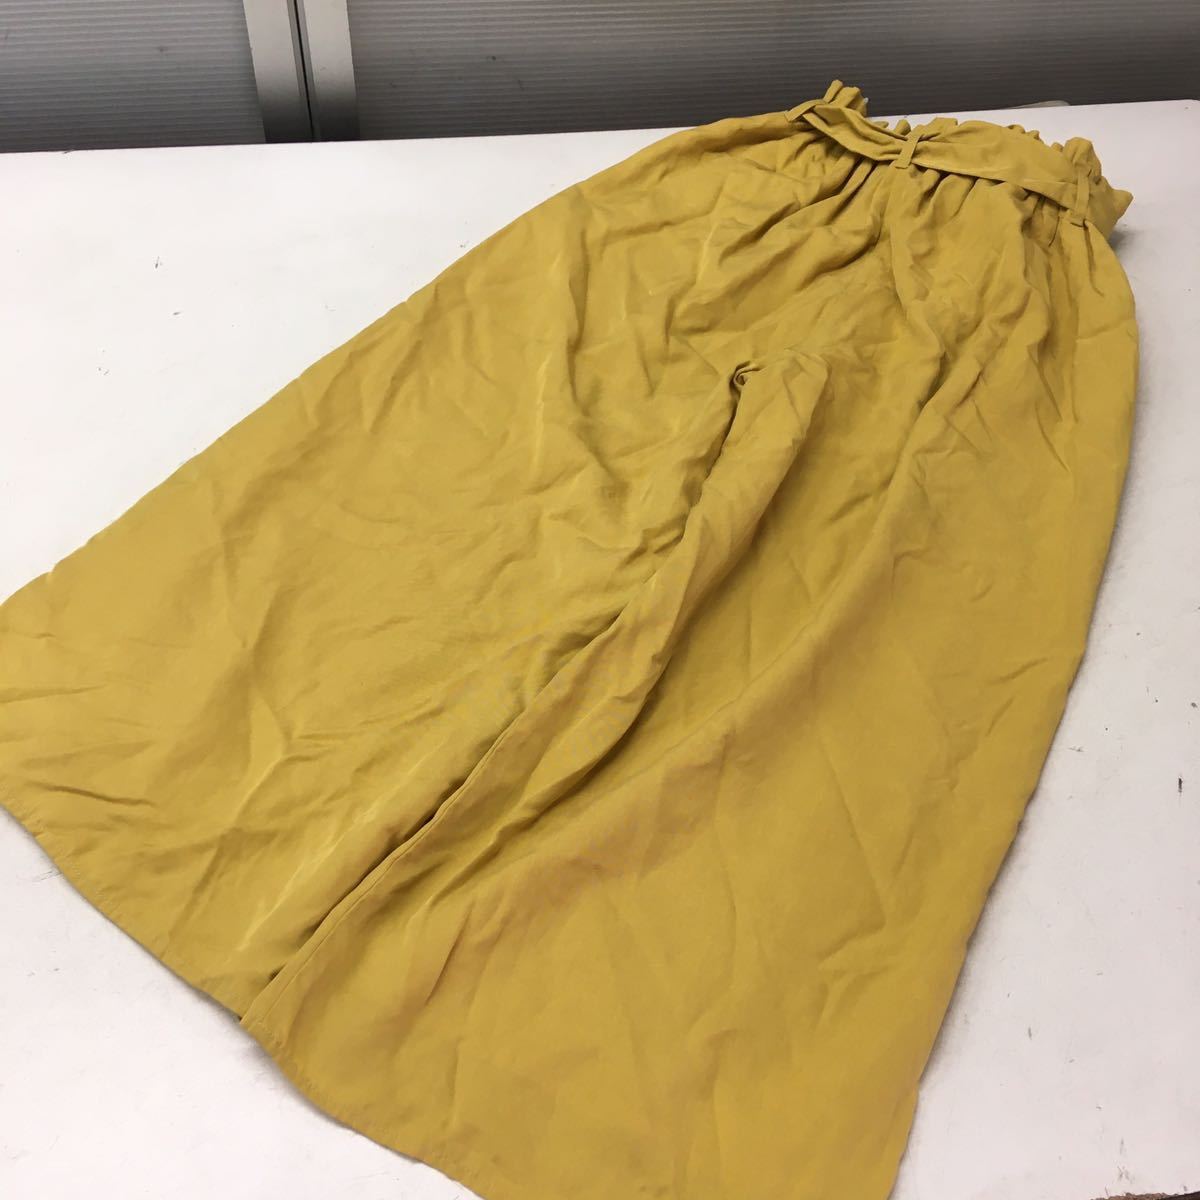  бесплатная доставка *MERCURYDUO Mercury Duo * широкий брюки гаучо брюки * свободный размер * желтый цвет #41124sNjj7